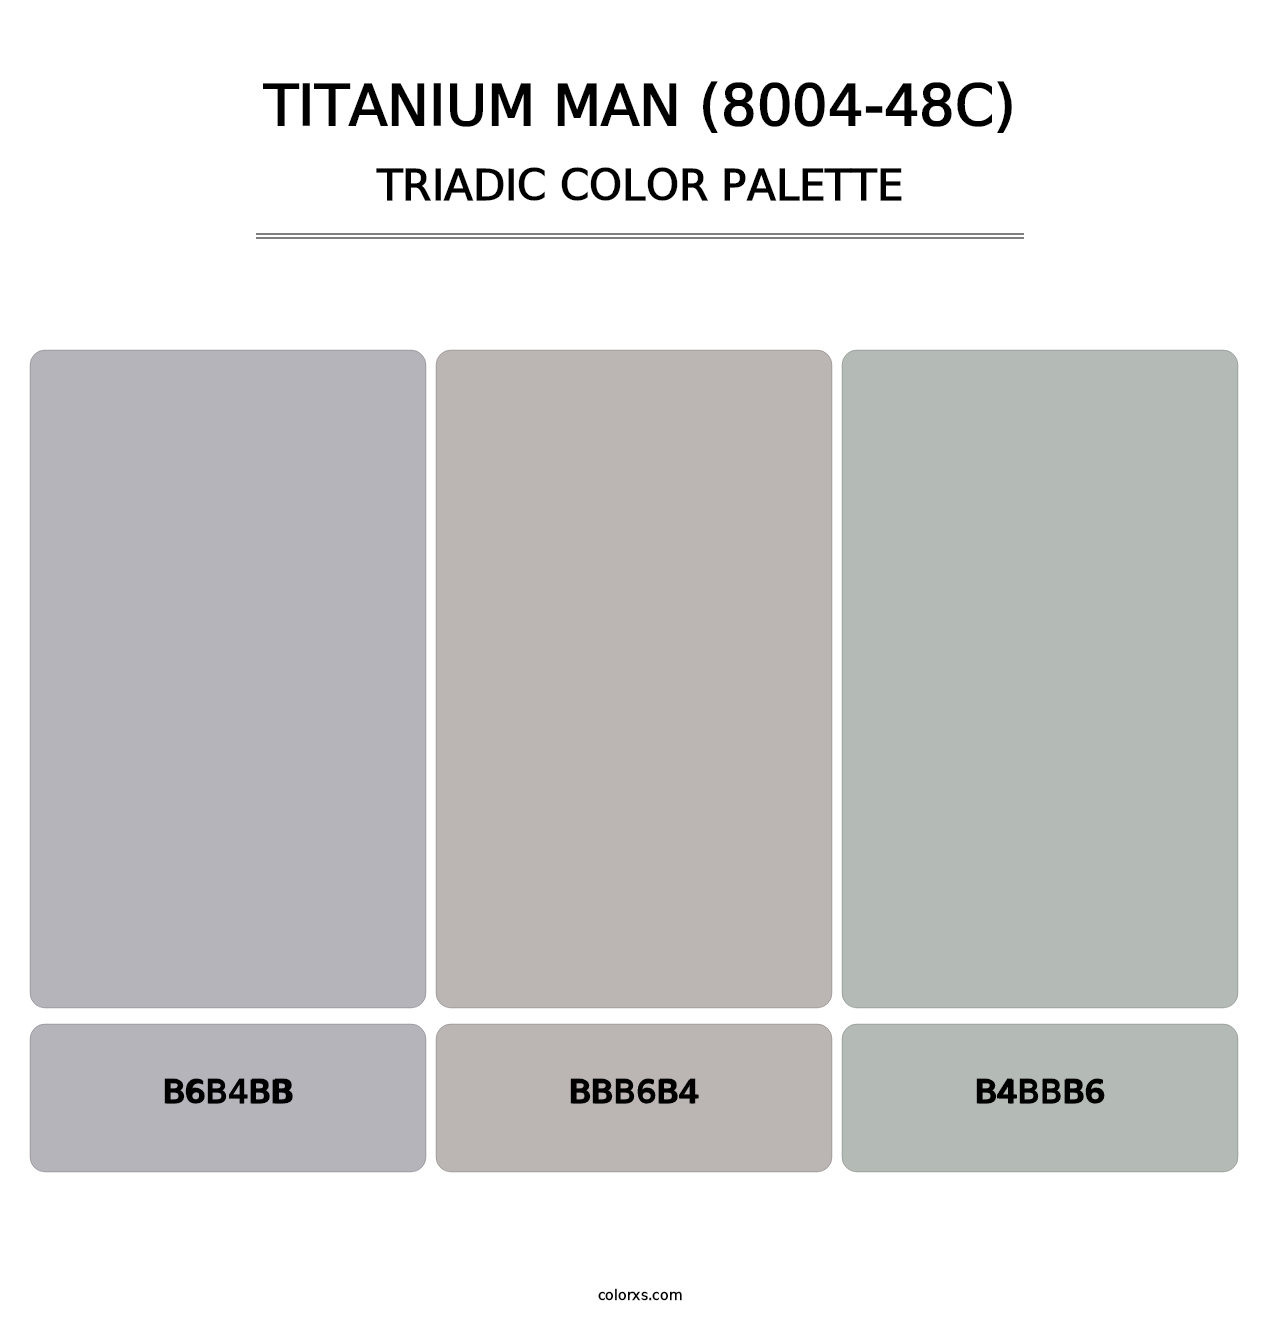 Titanium Man (8004-48C) - Triadic Color Palette